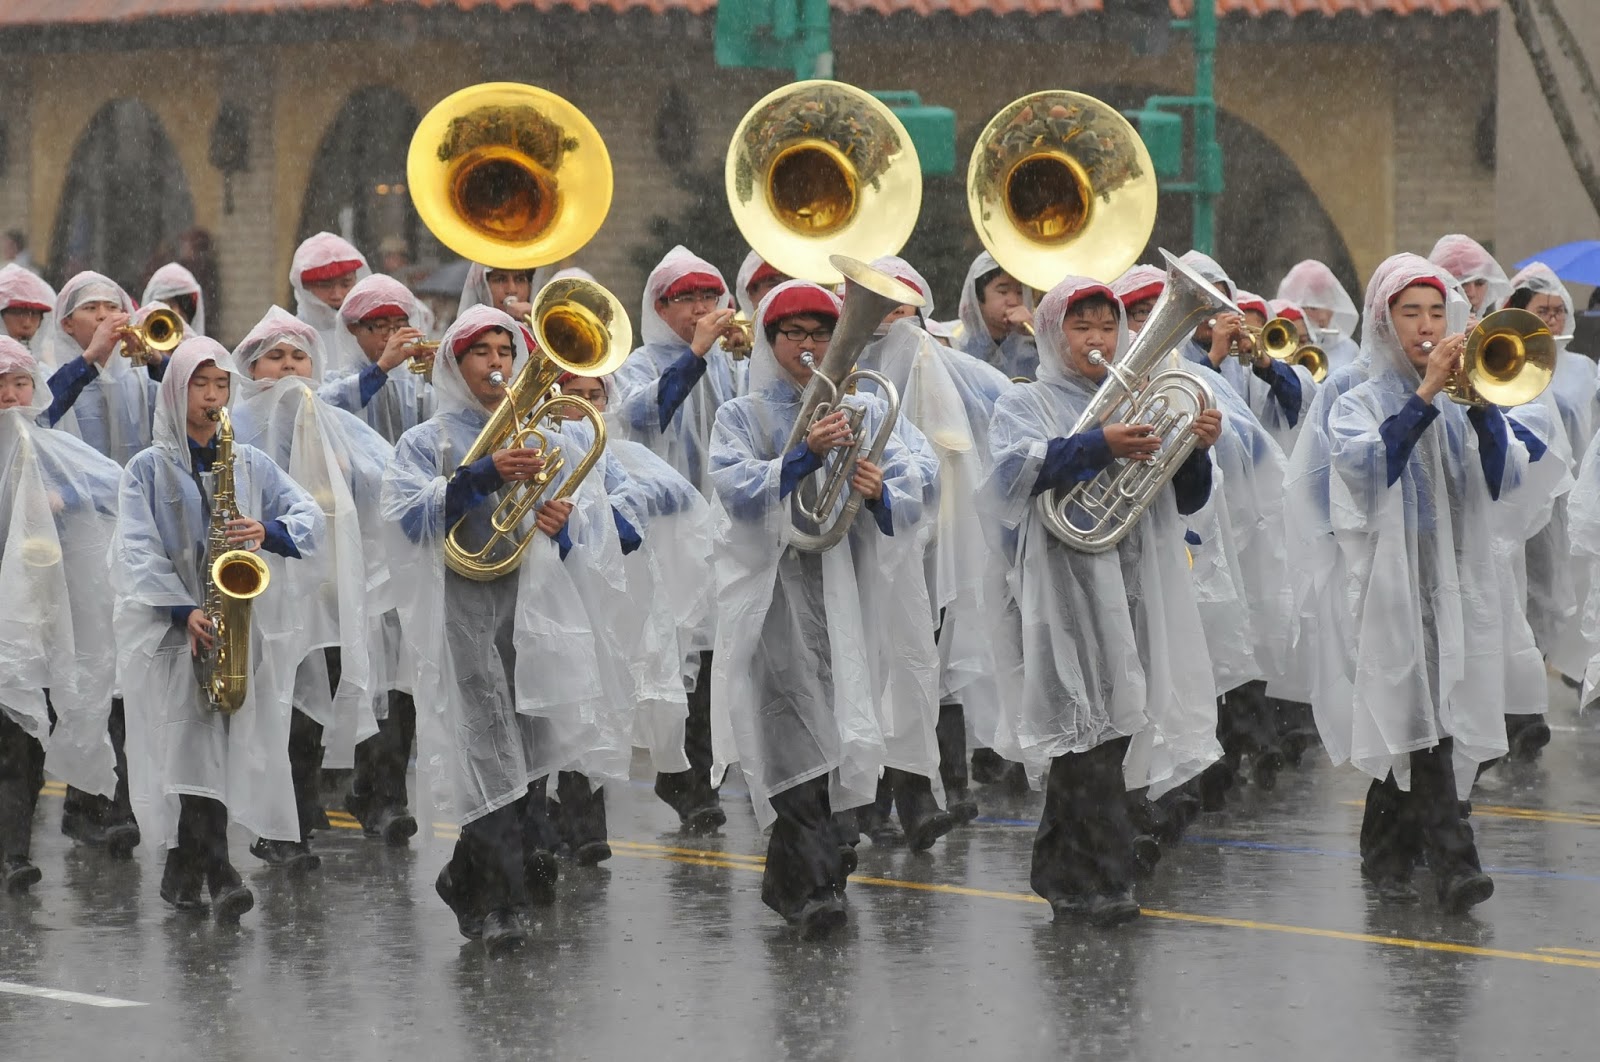 Rainy-Parade.jpg